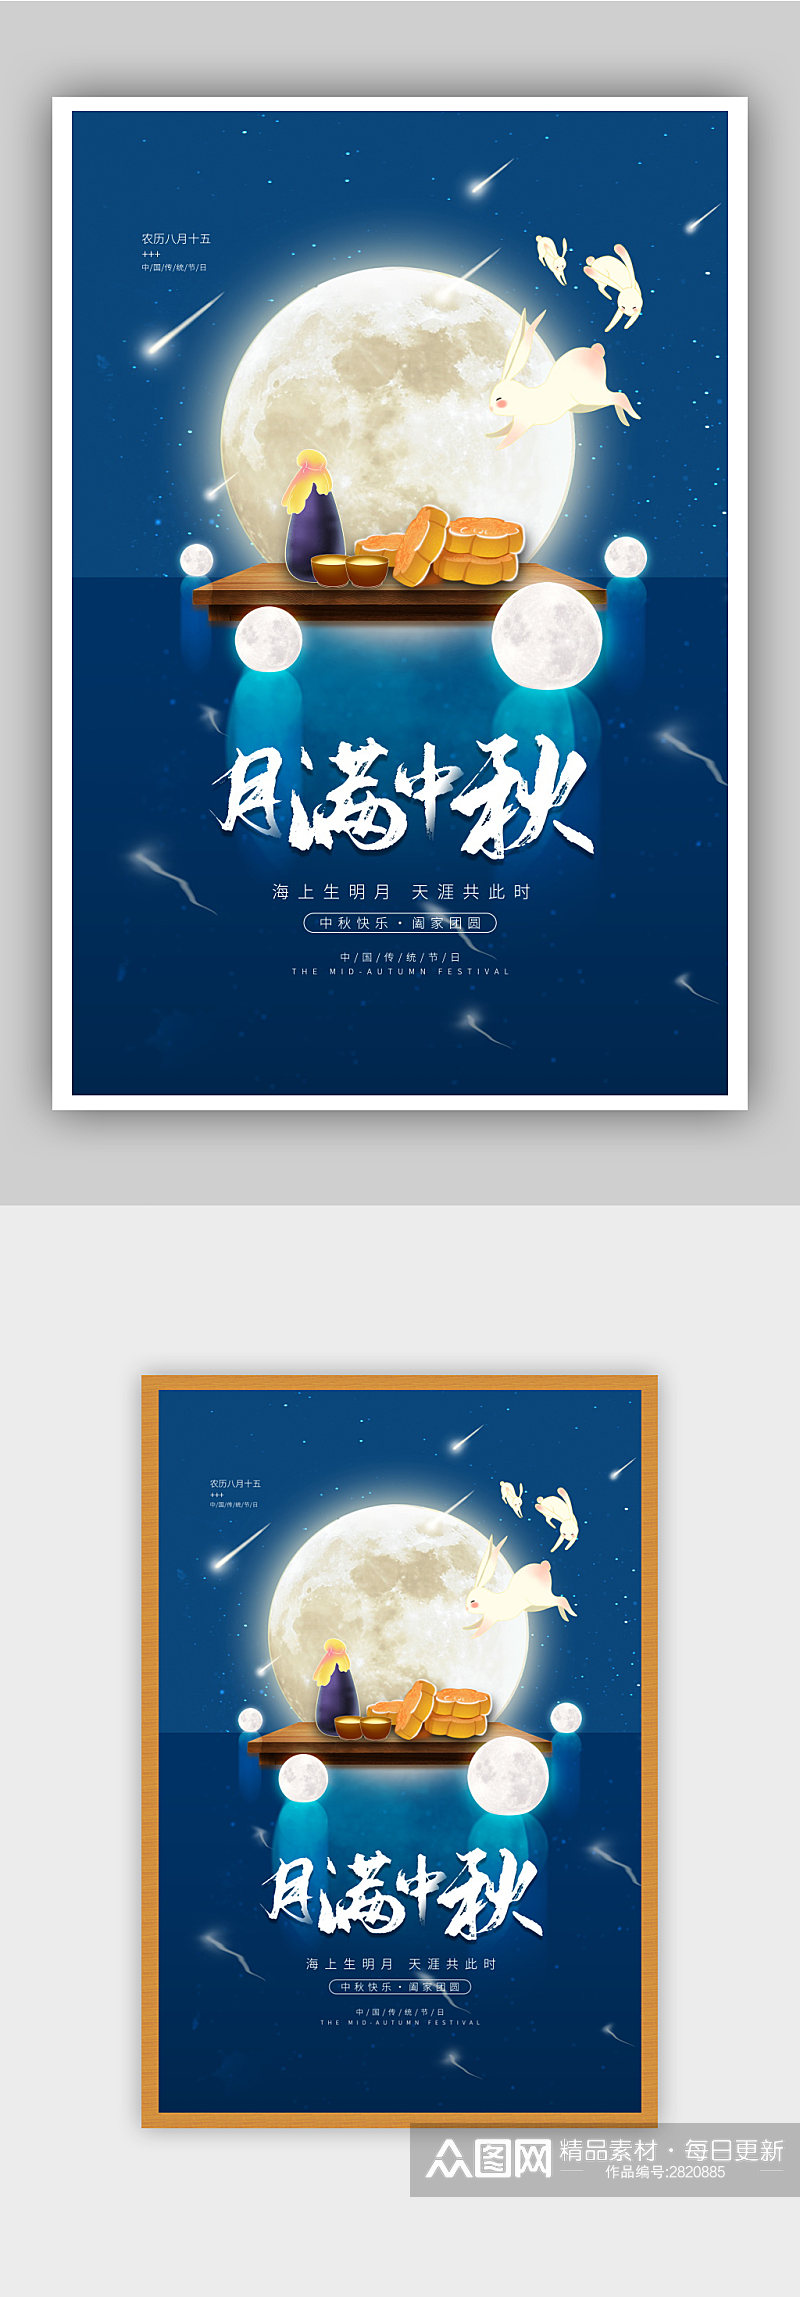 简约农历八月十五中秋节宣传海报素材